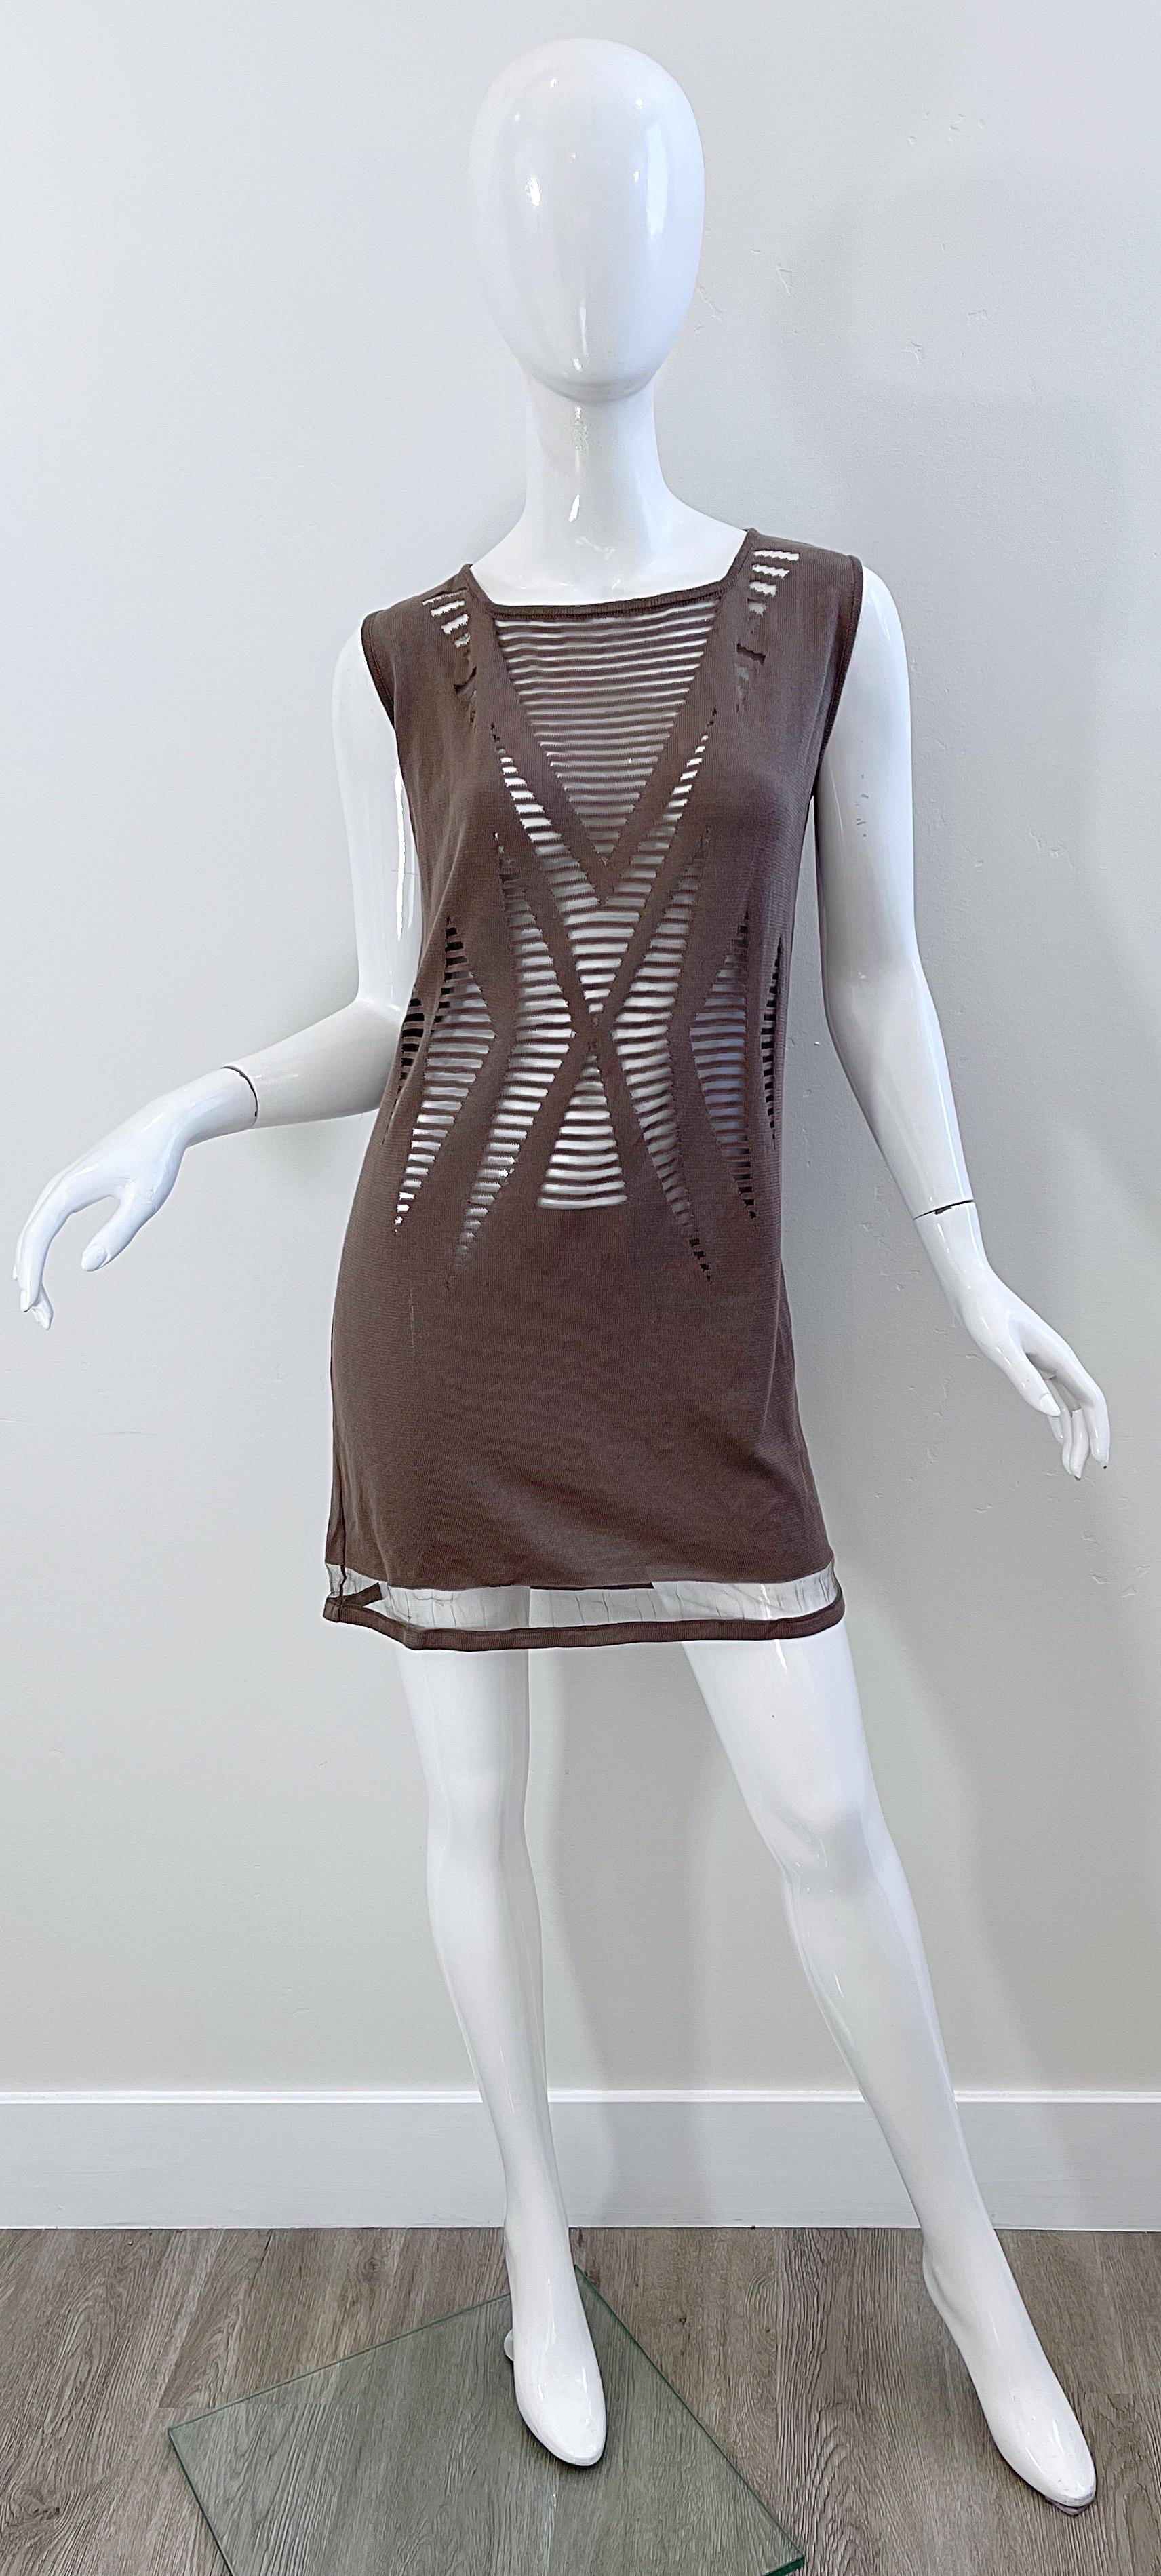 Superbe robe en maille taupe KRIZIA vintage 90s deadstock ! Les panneaux transparents sont recouverts d'une maille sur toute la longueur. Il se glisse simplement sur la tête et s'étire pour s'adapter. Tissu doux en coton (90 %) et nylon (10 %).